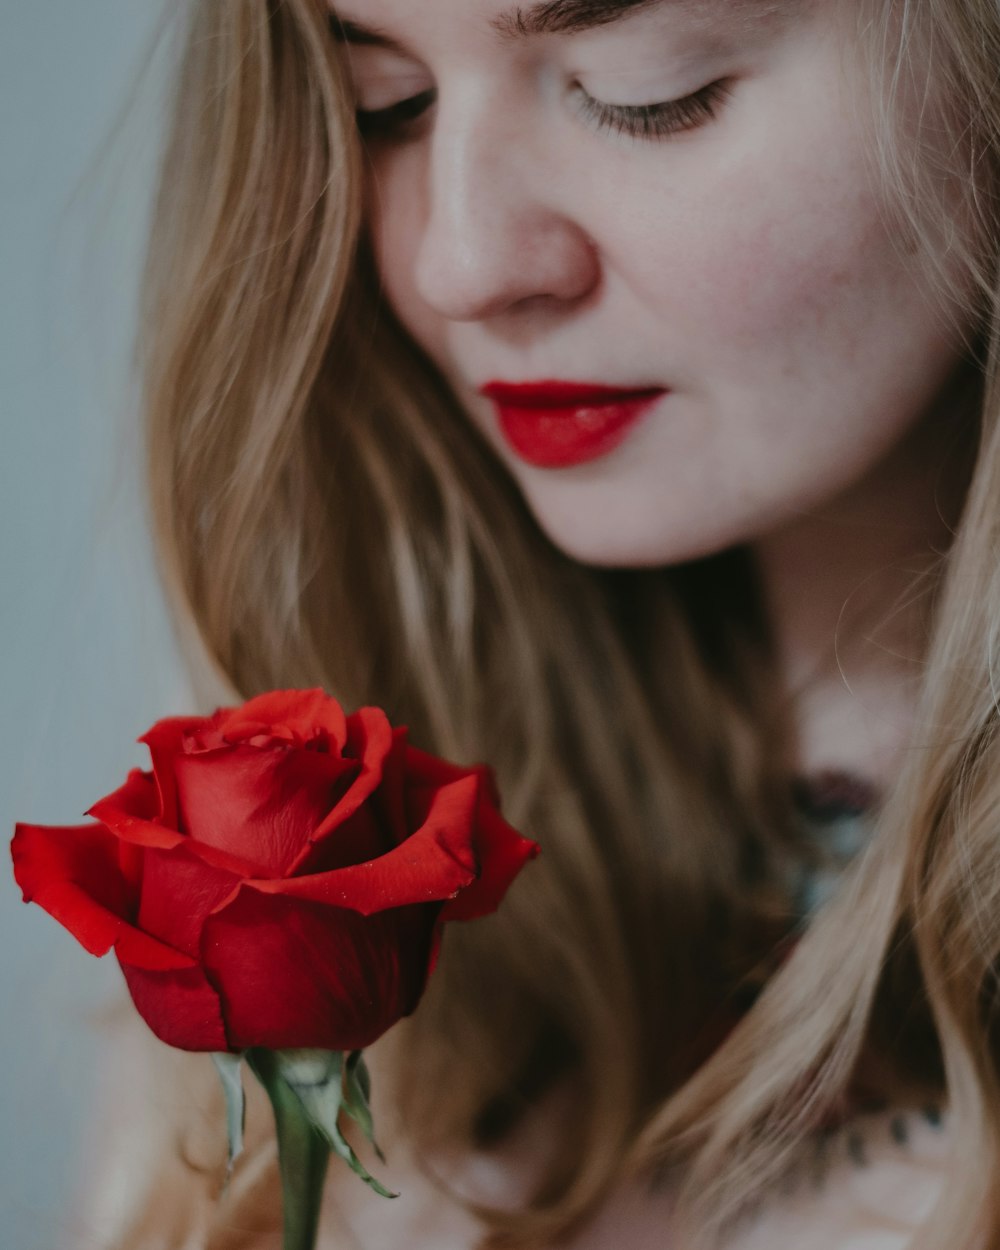 donna che tiene la rosa rossa nella fotografia ravvicinata